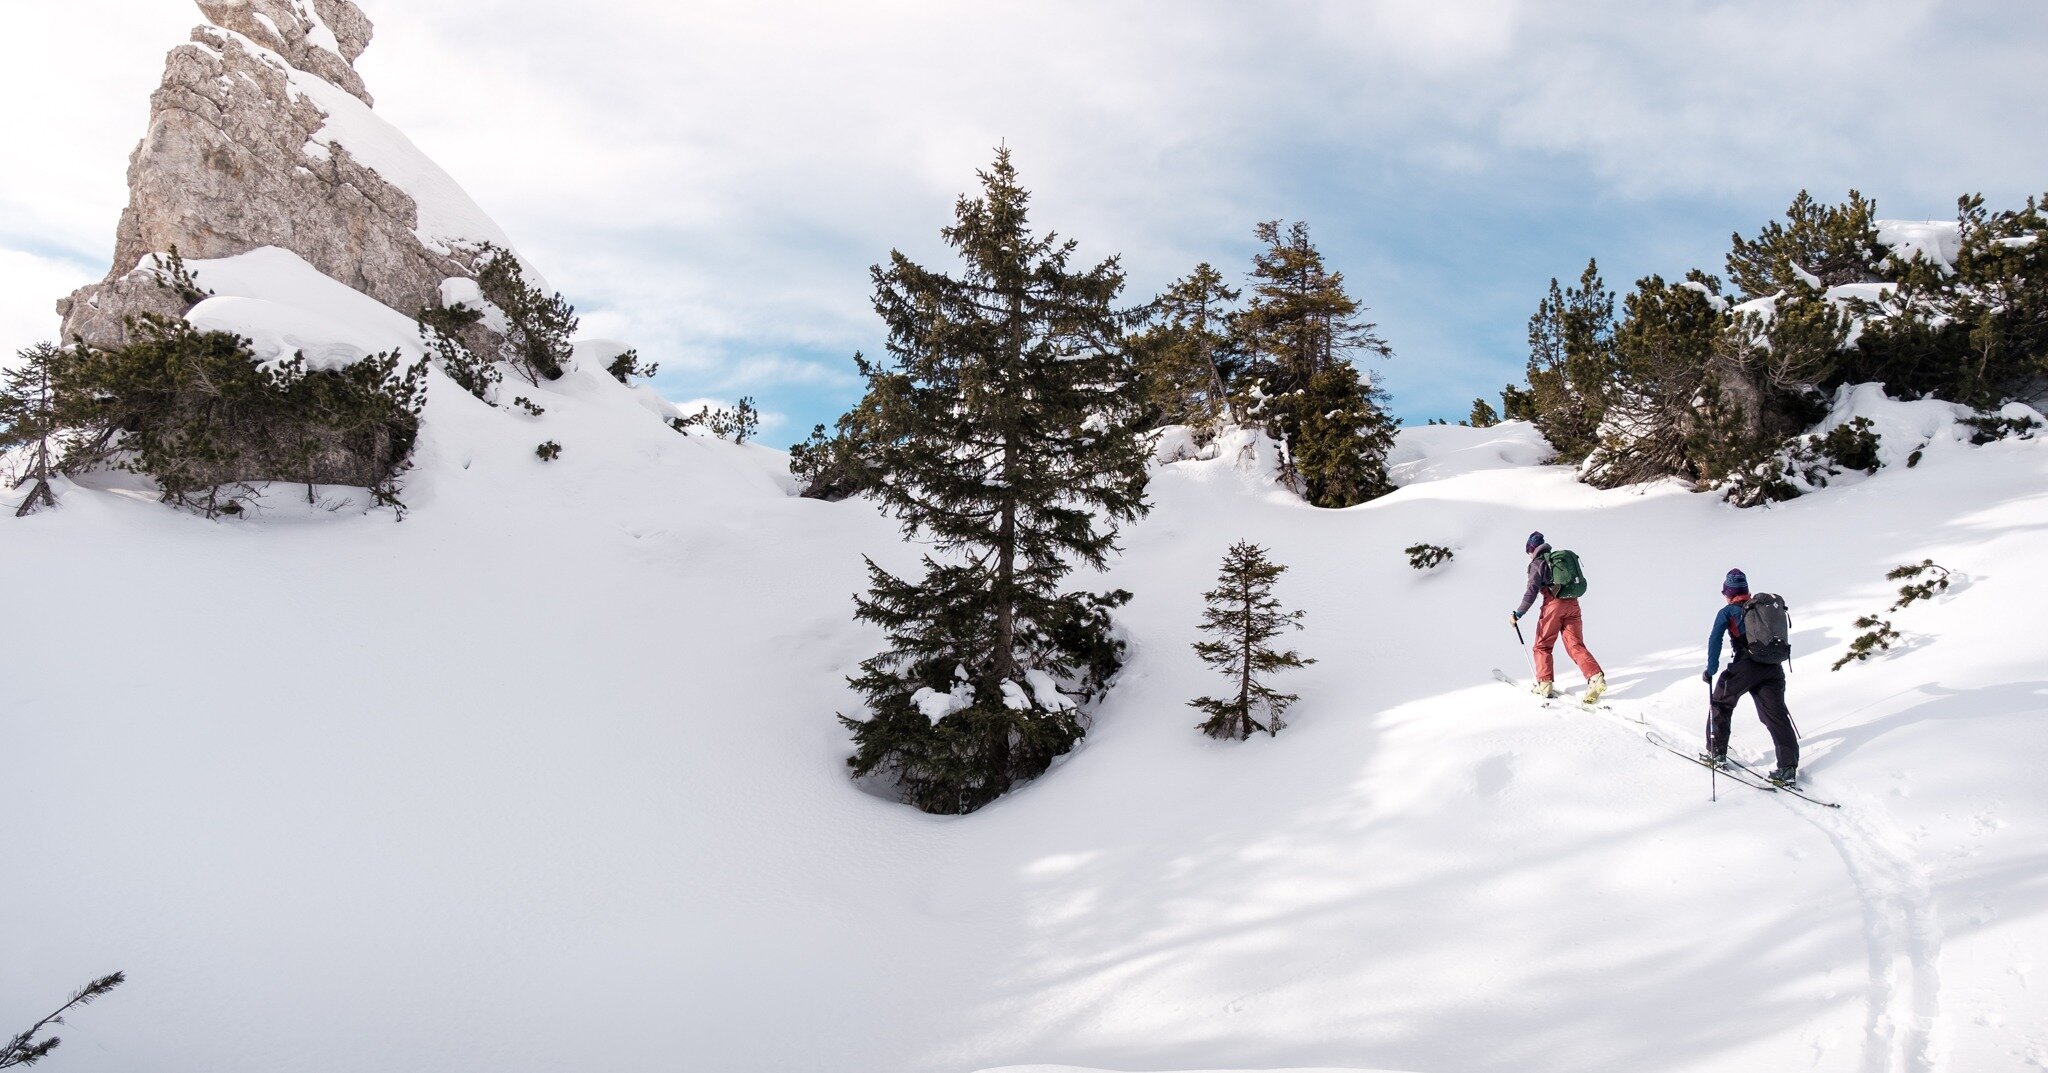 ❄️ Hai iniziato a fare scialpinismo attratto dai fantastici itinerari che si possono percorrere?🗻
❄️ Ti piacerebbe scoprire luoghi incontaminati con gli sci? ⛷
A gennaio iniziano i nostri corsi di scialpinismo e splitboard!
📍 Pianificazione, nivolo